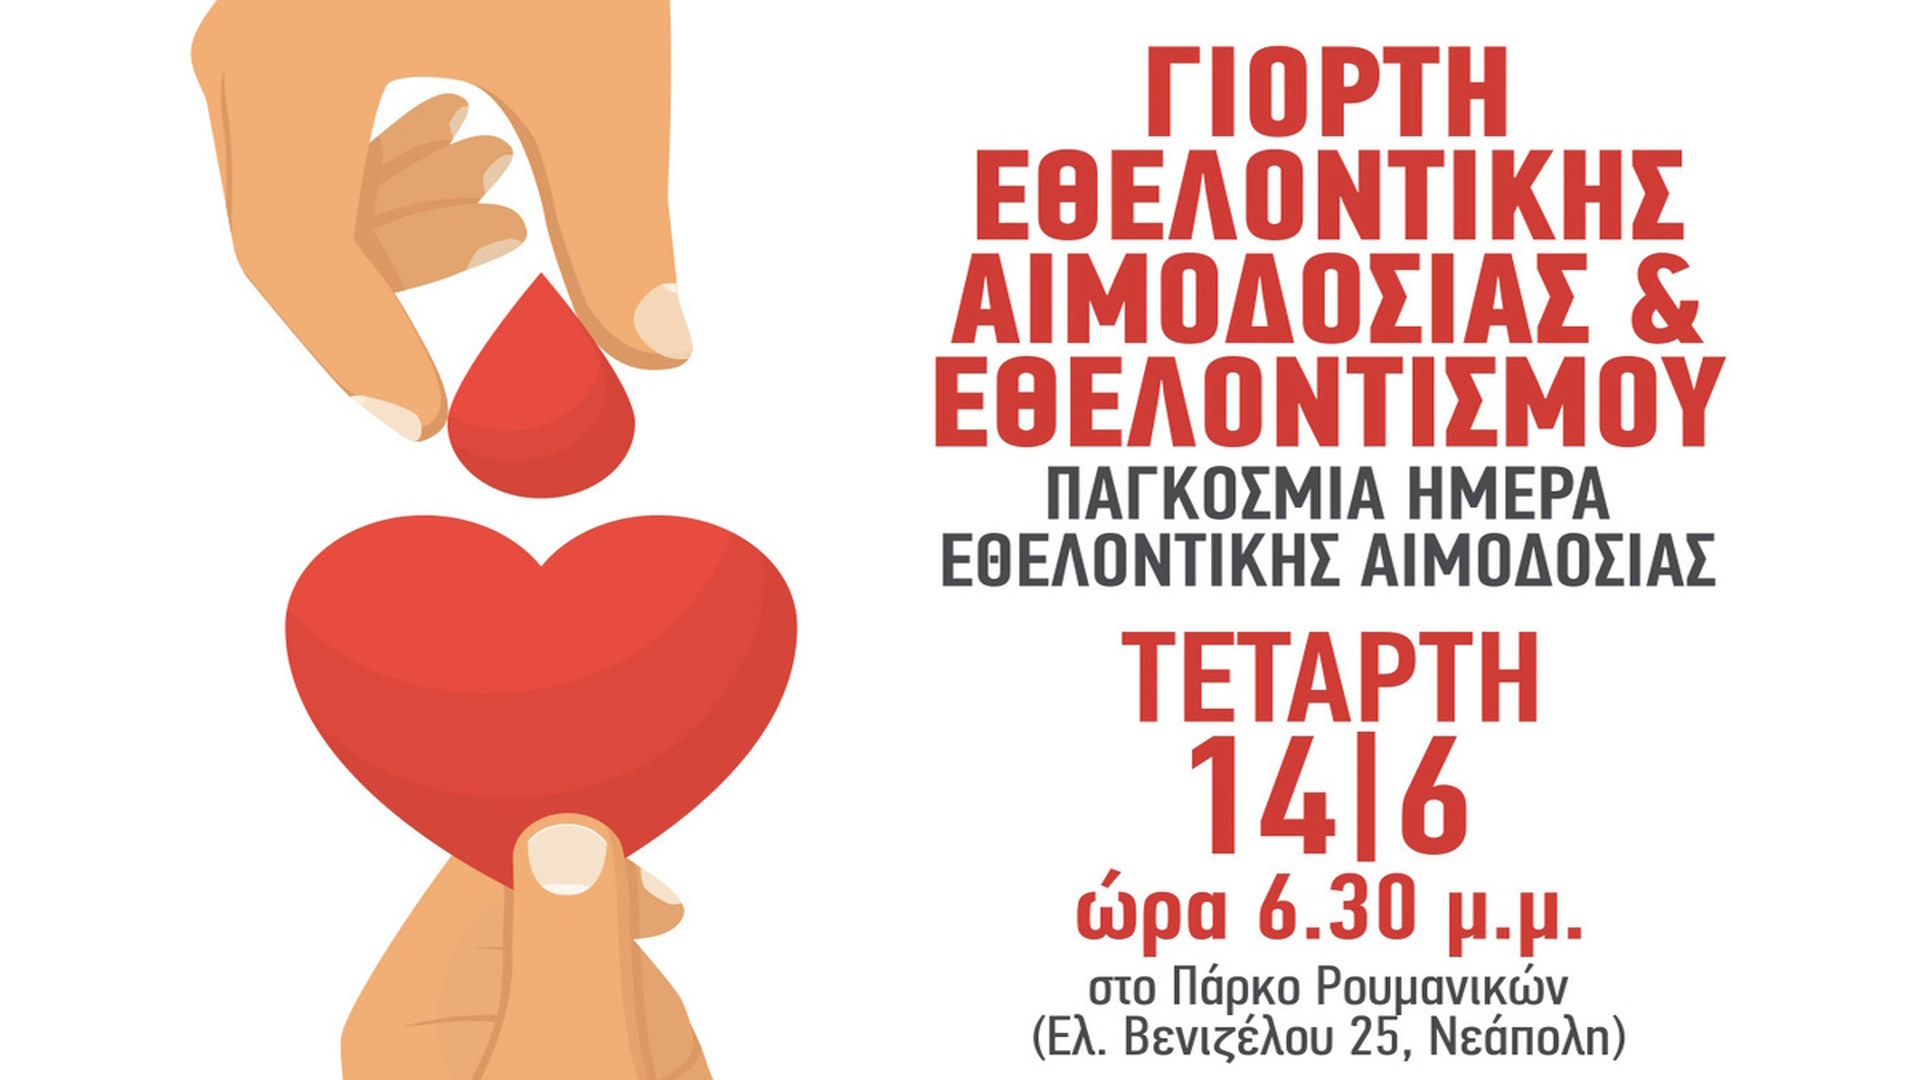 Παγκόσμια ημέρα Εθελοντή Αιμοδότη σήμερα  και ο δήμος Νεάπολης-Συκεών τη γιορτάζει  στο Πάρκο των Ρουμανικών 